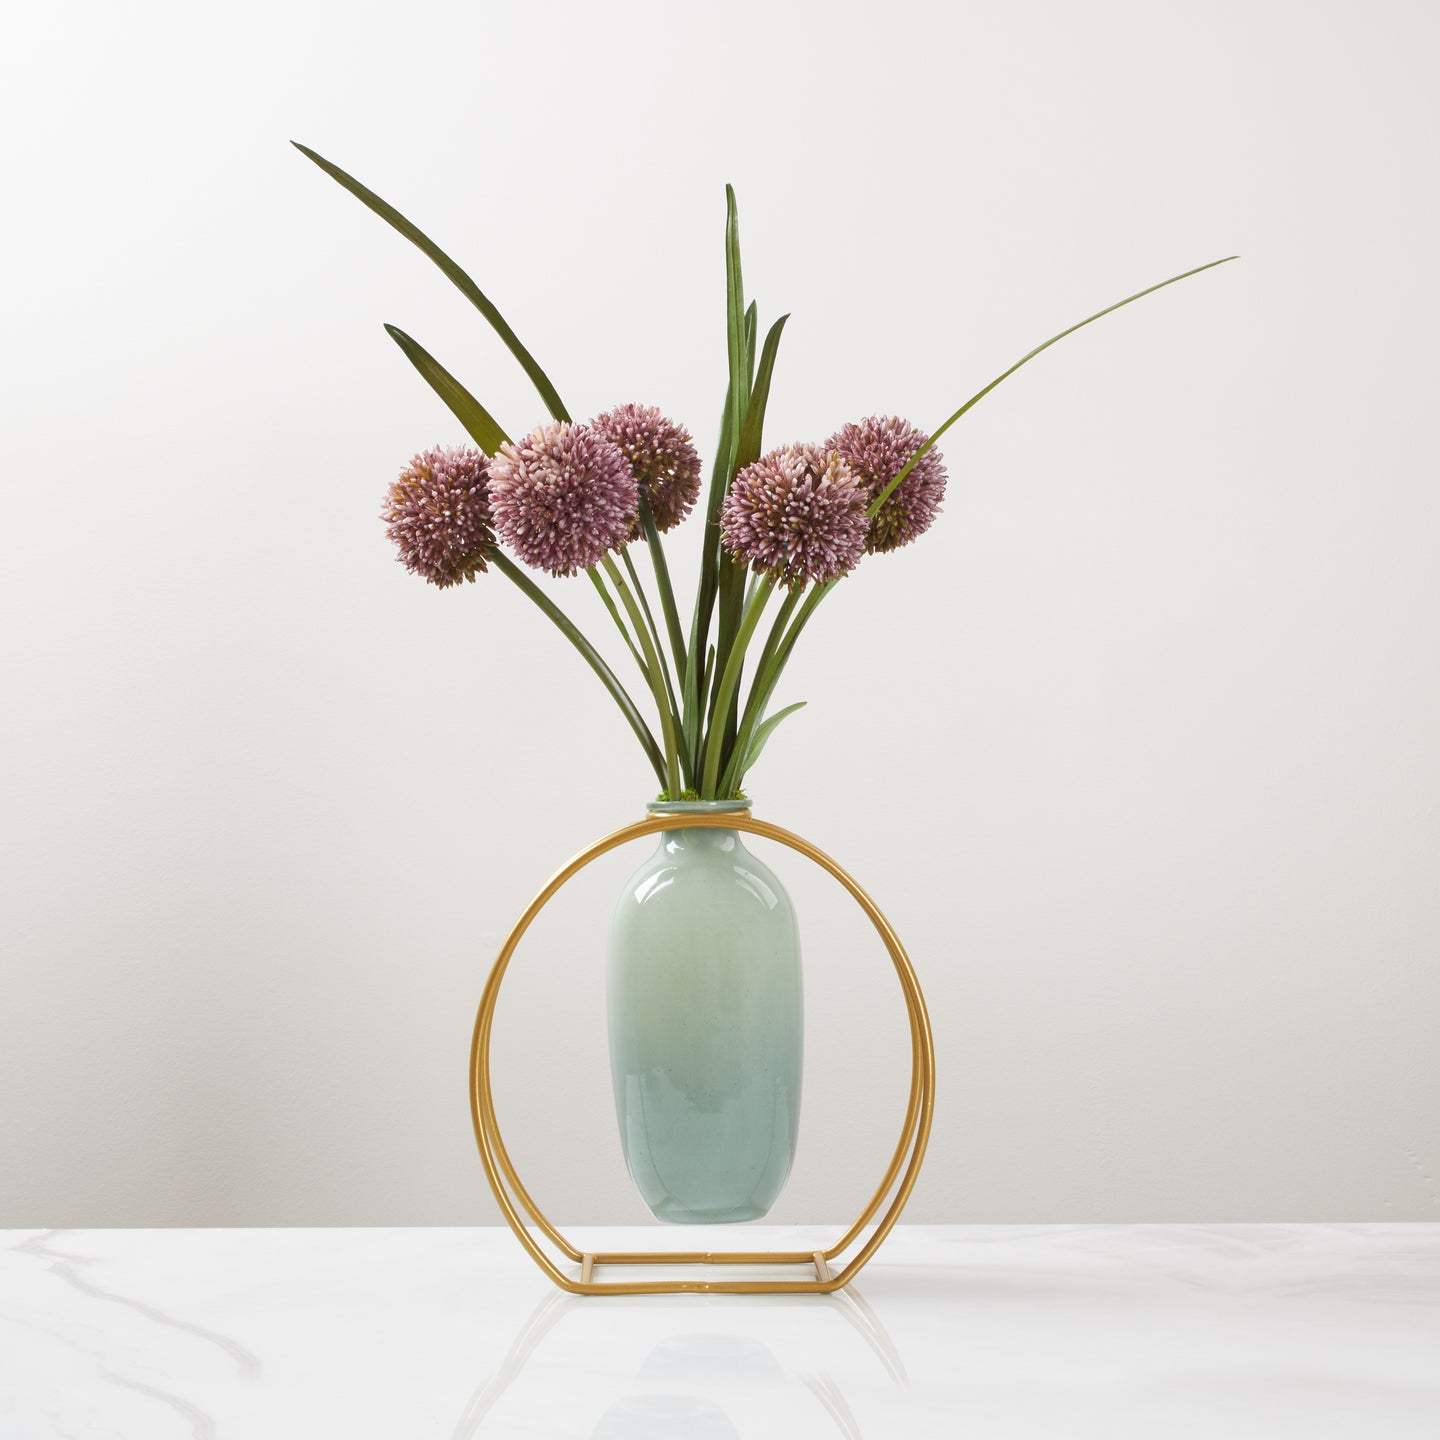 Suspend Vase With Alliums